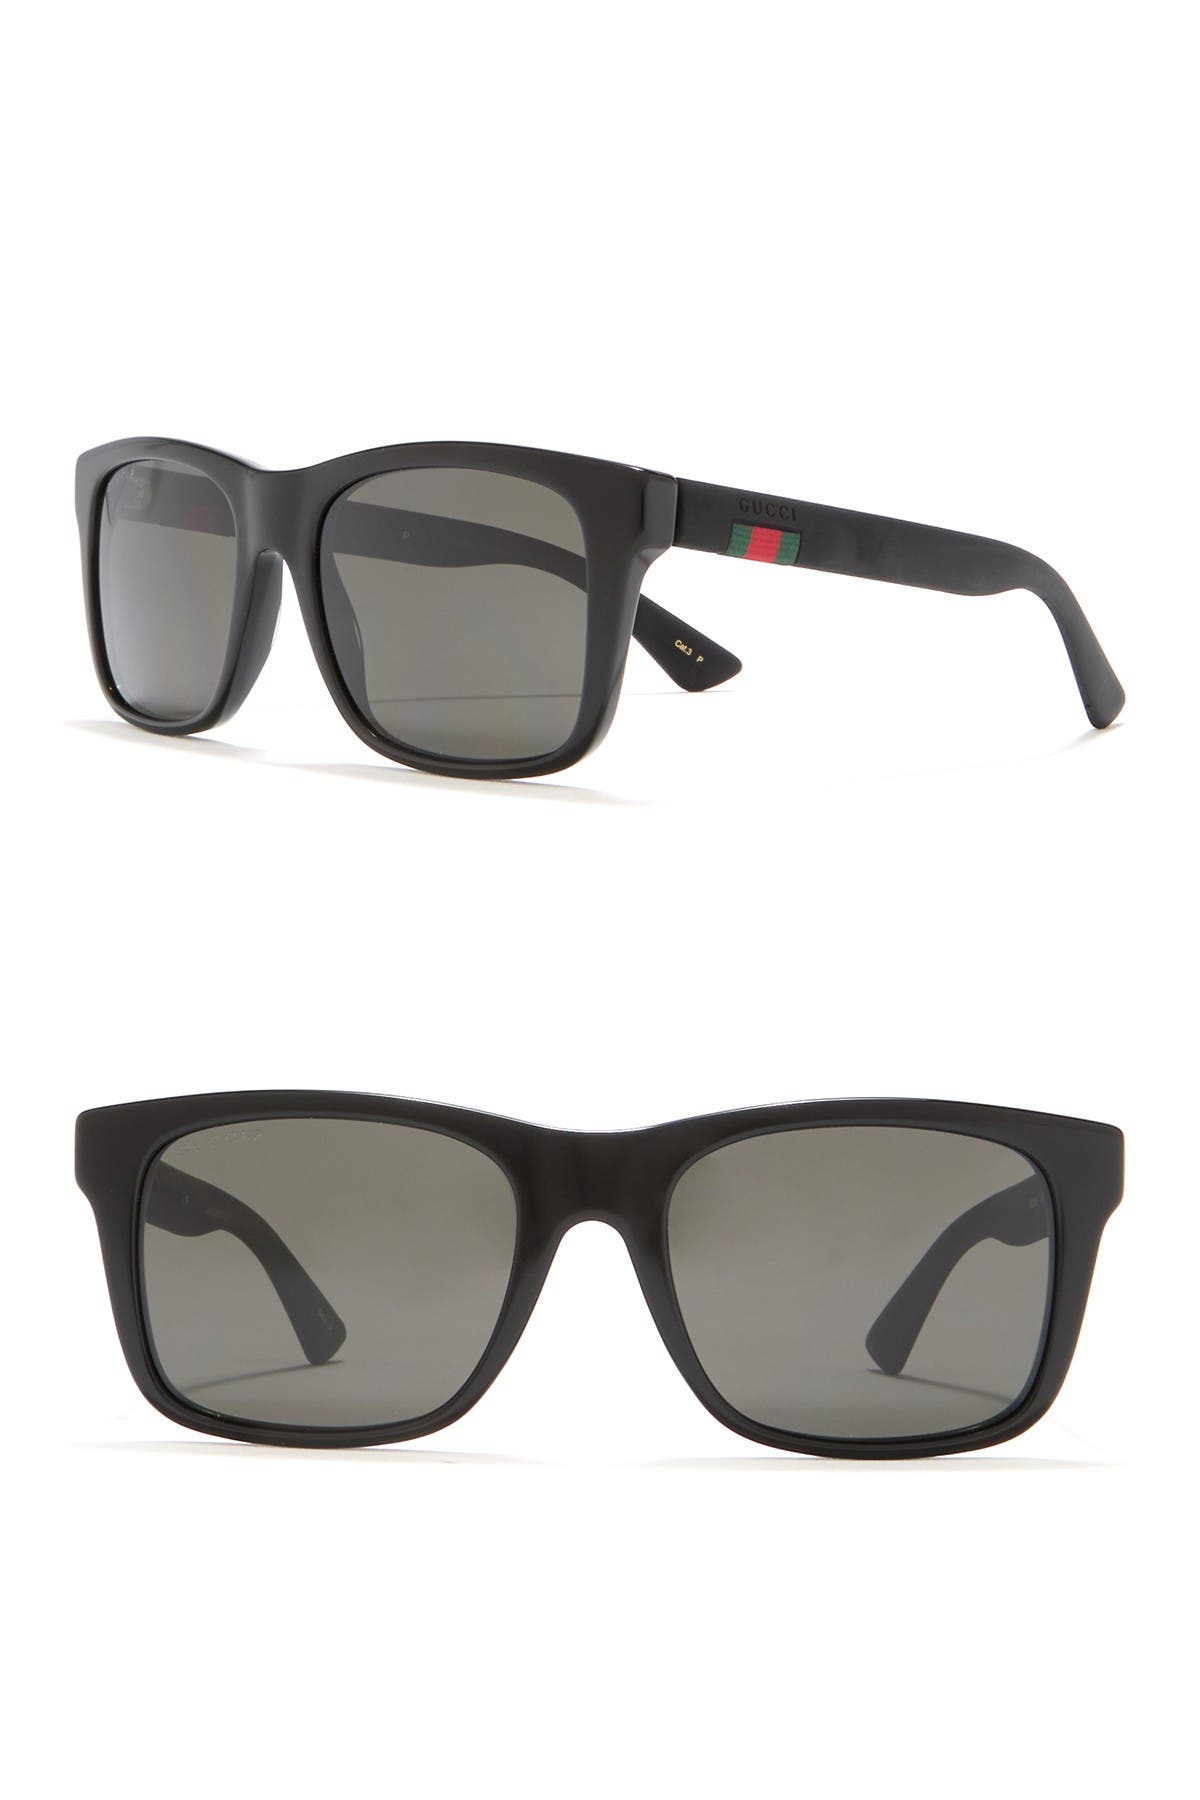 gucci 55mm square sunglasses